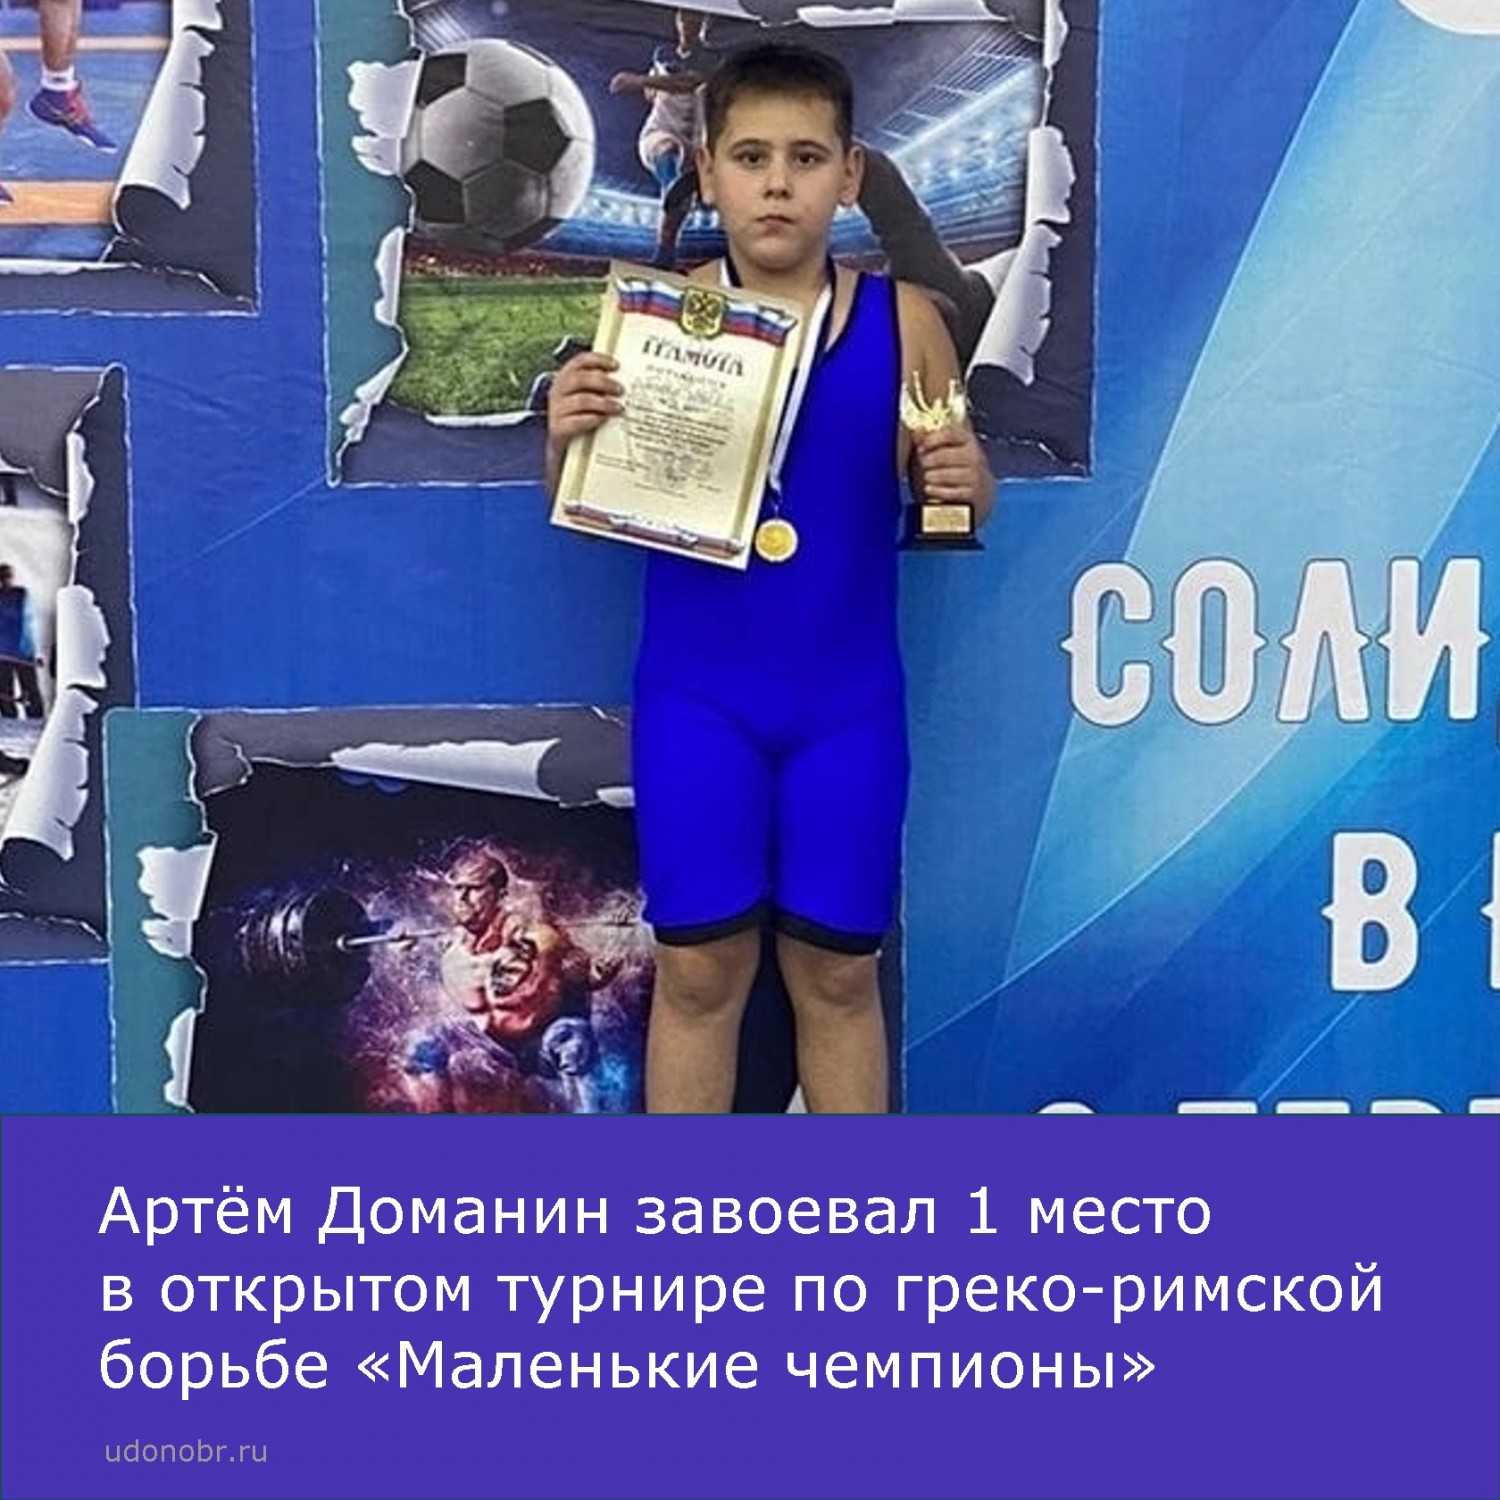 Артём Доманин завоевал 1 место в открытом турнире по греко-римской борьбе «Маленькие чемпионы»